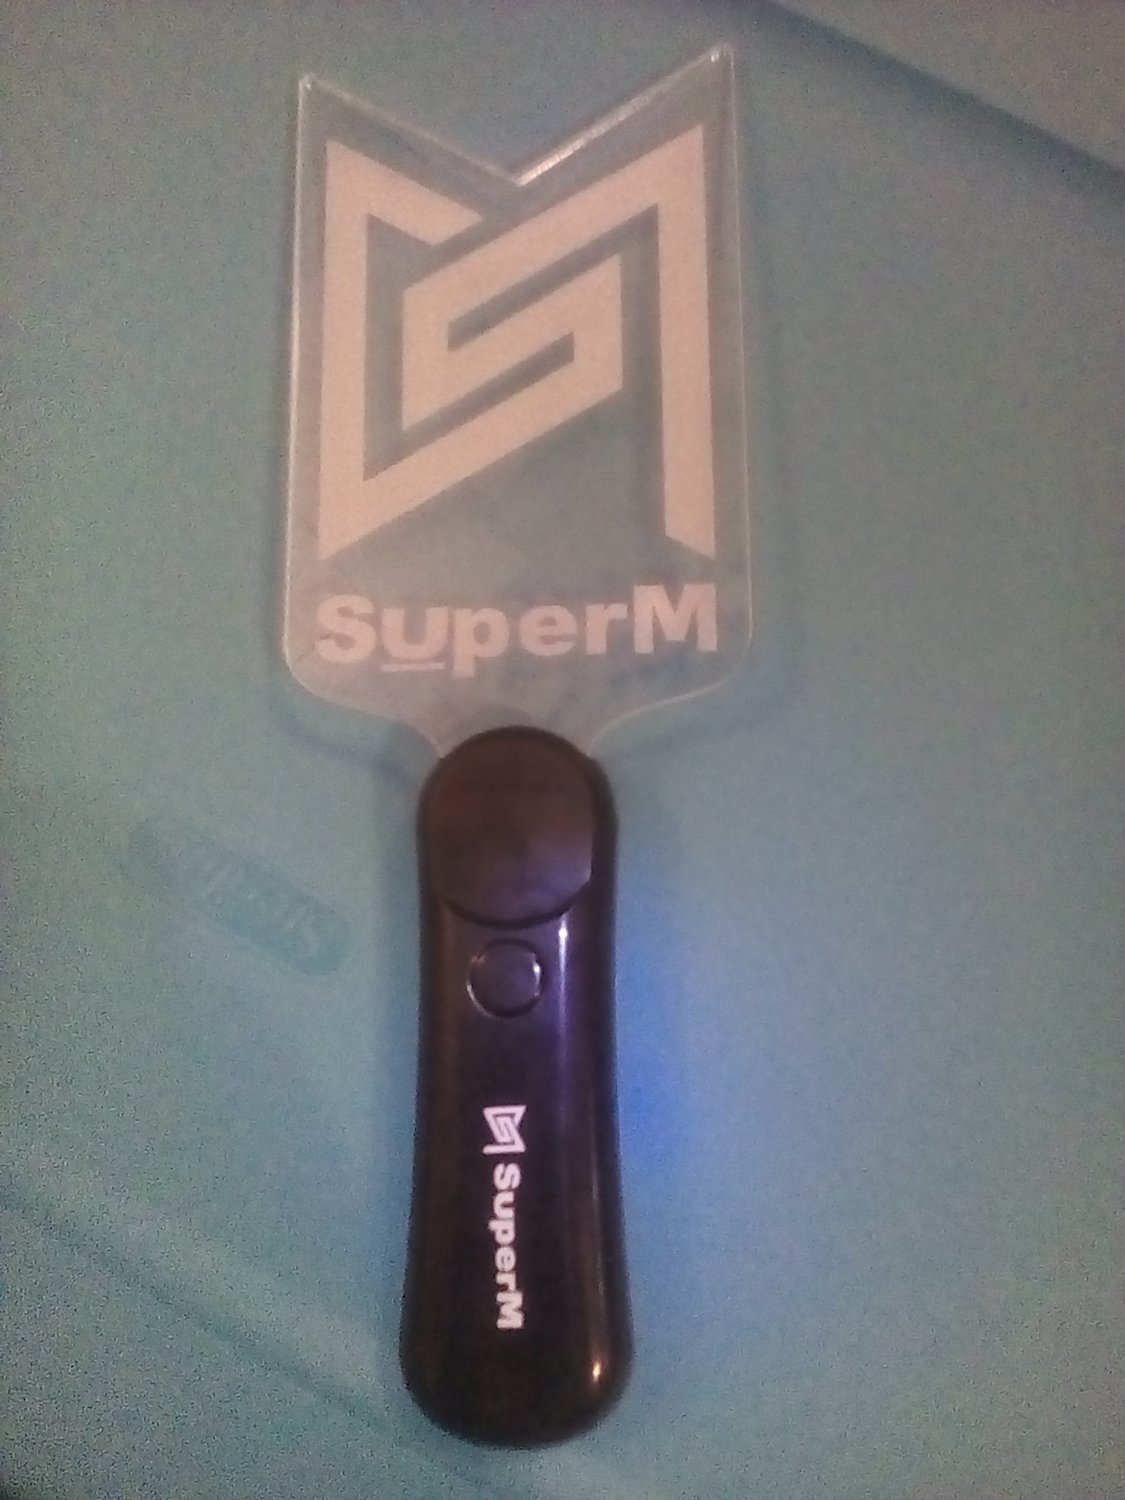 Super M (KPOP) Lightsticks